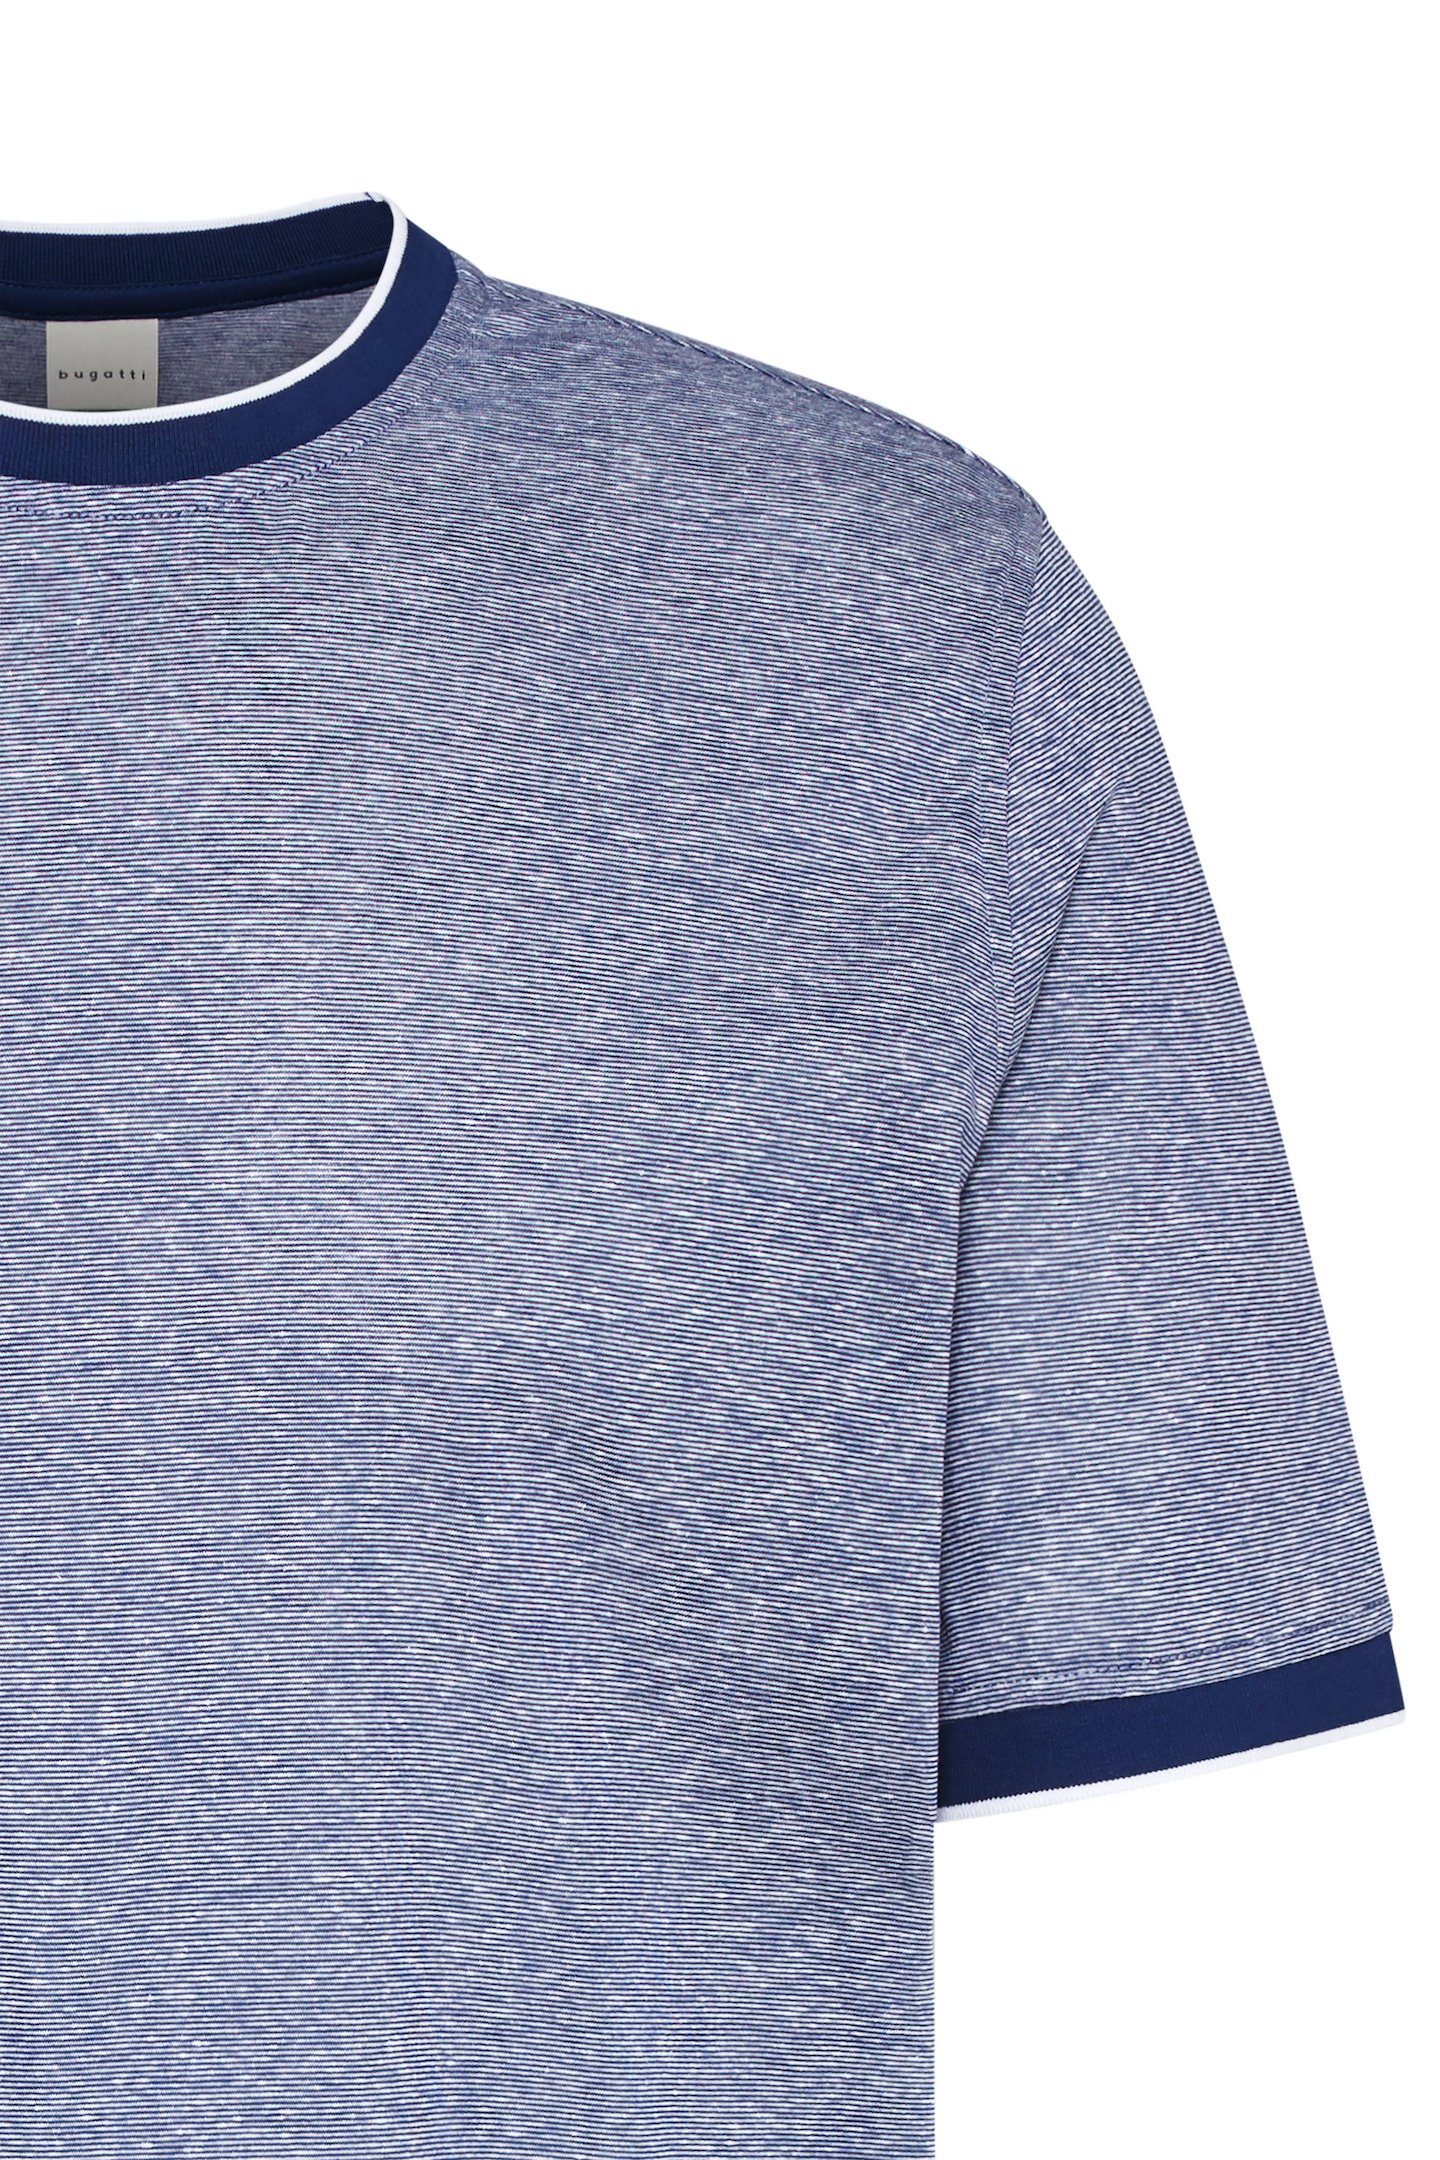 Leinen-Mix organic bugatti aus und Cotton blau T-Shirt